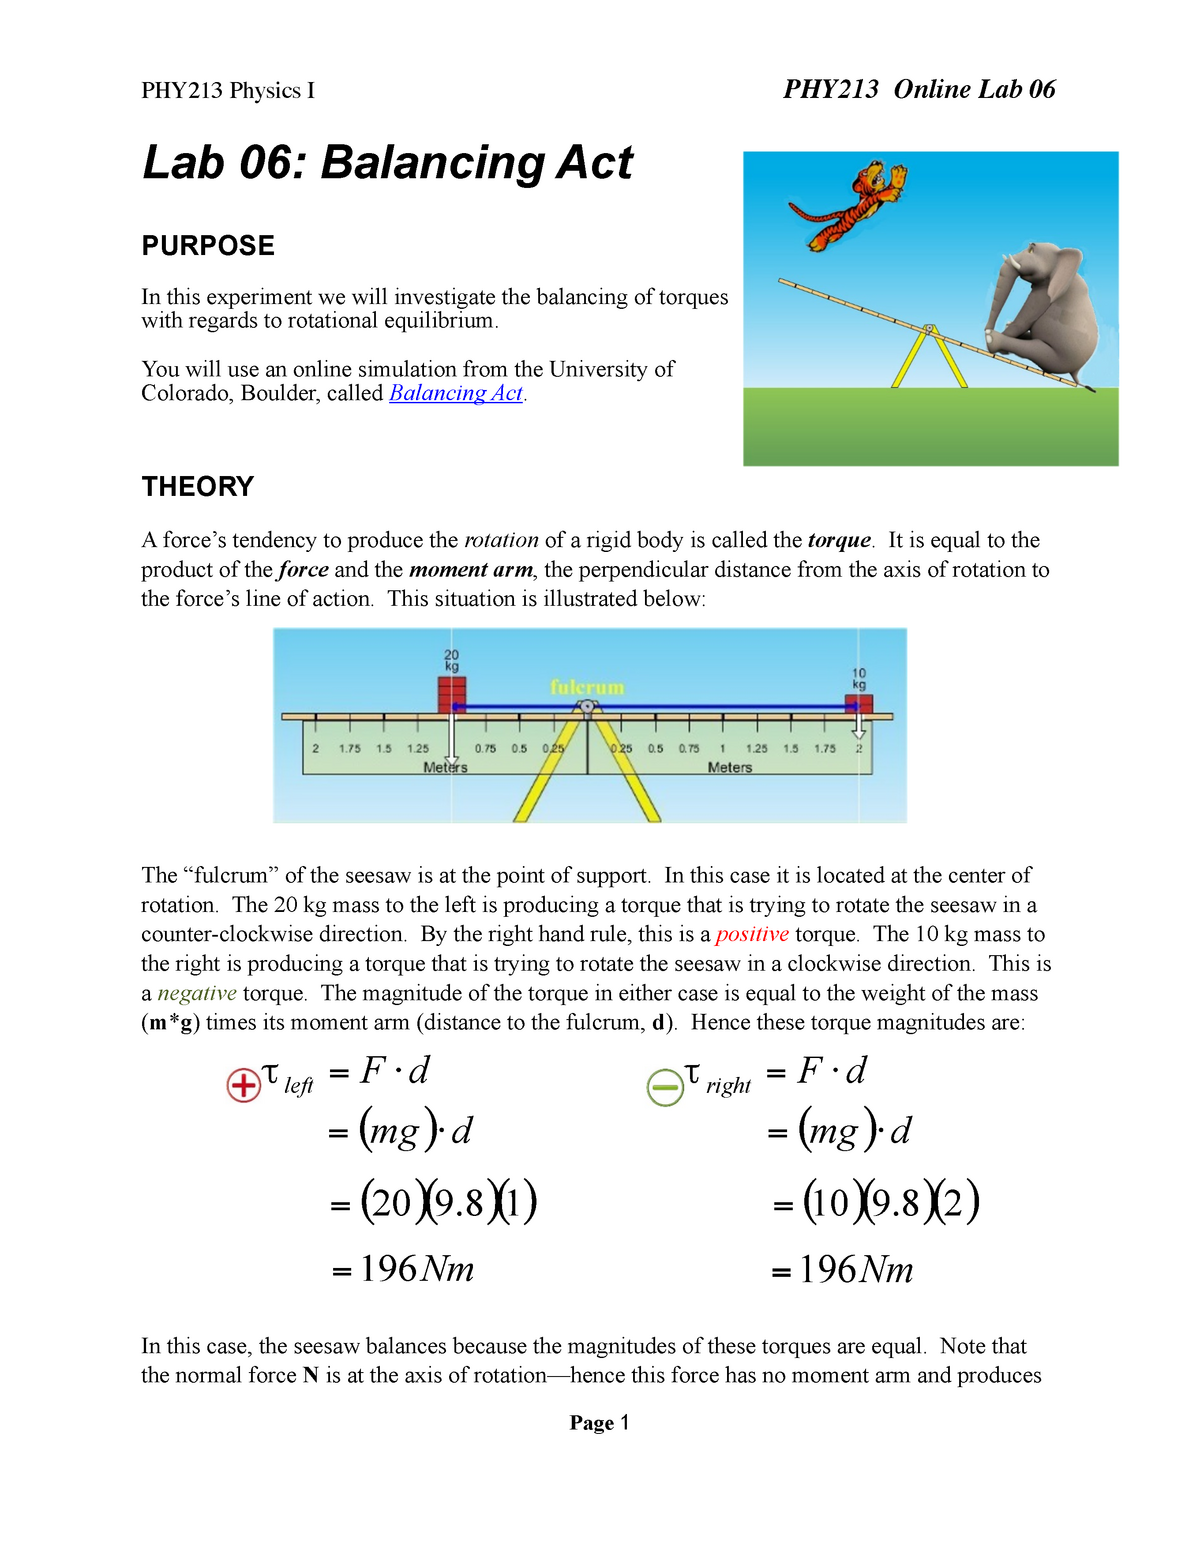 a-balancing-act-worksheet-answers-key-balancing-equations-coloring-worksheet-page-1-equation